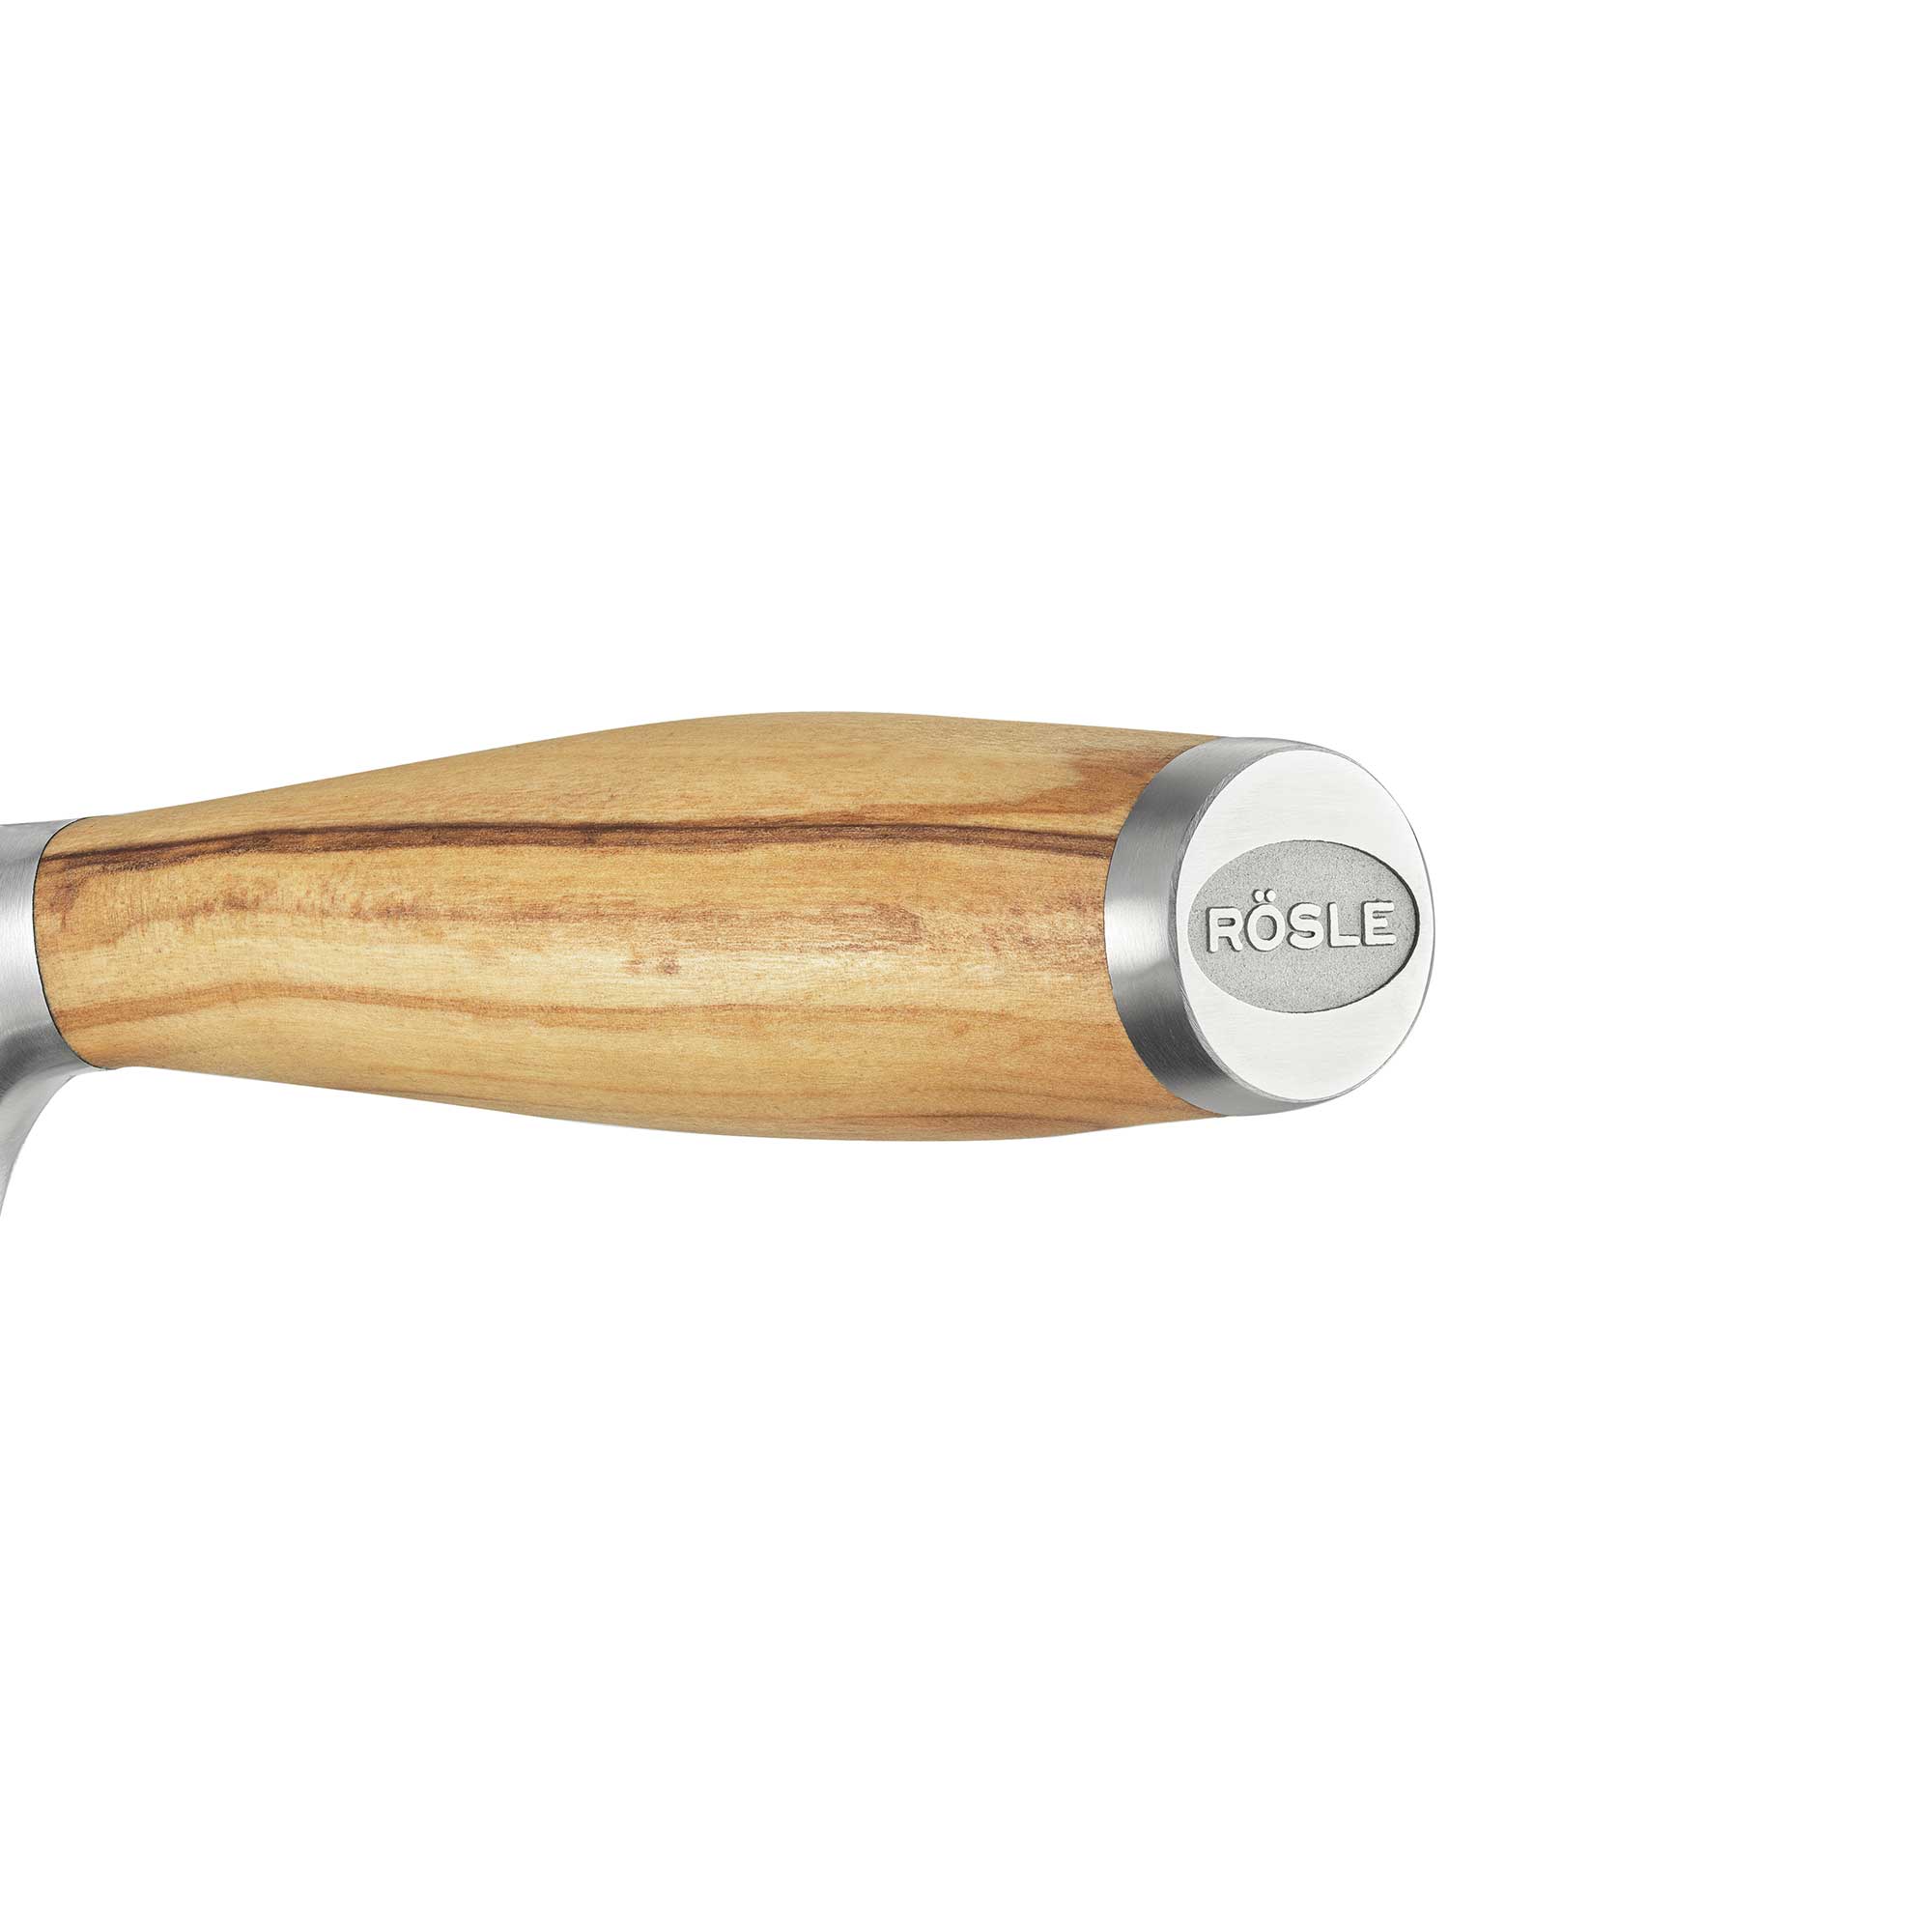 Carving knife Artesano 20 cm | 8.0 in.